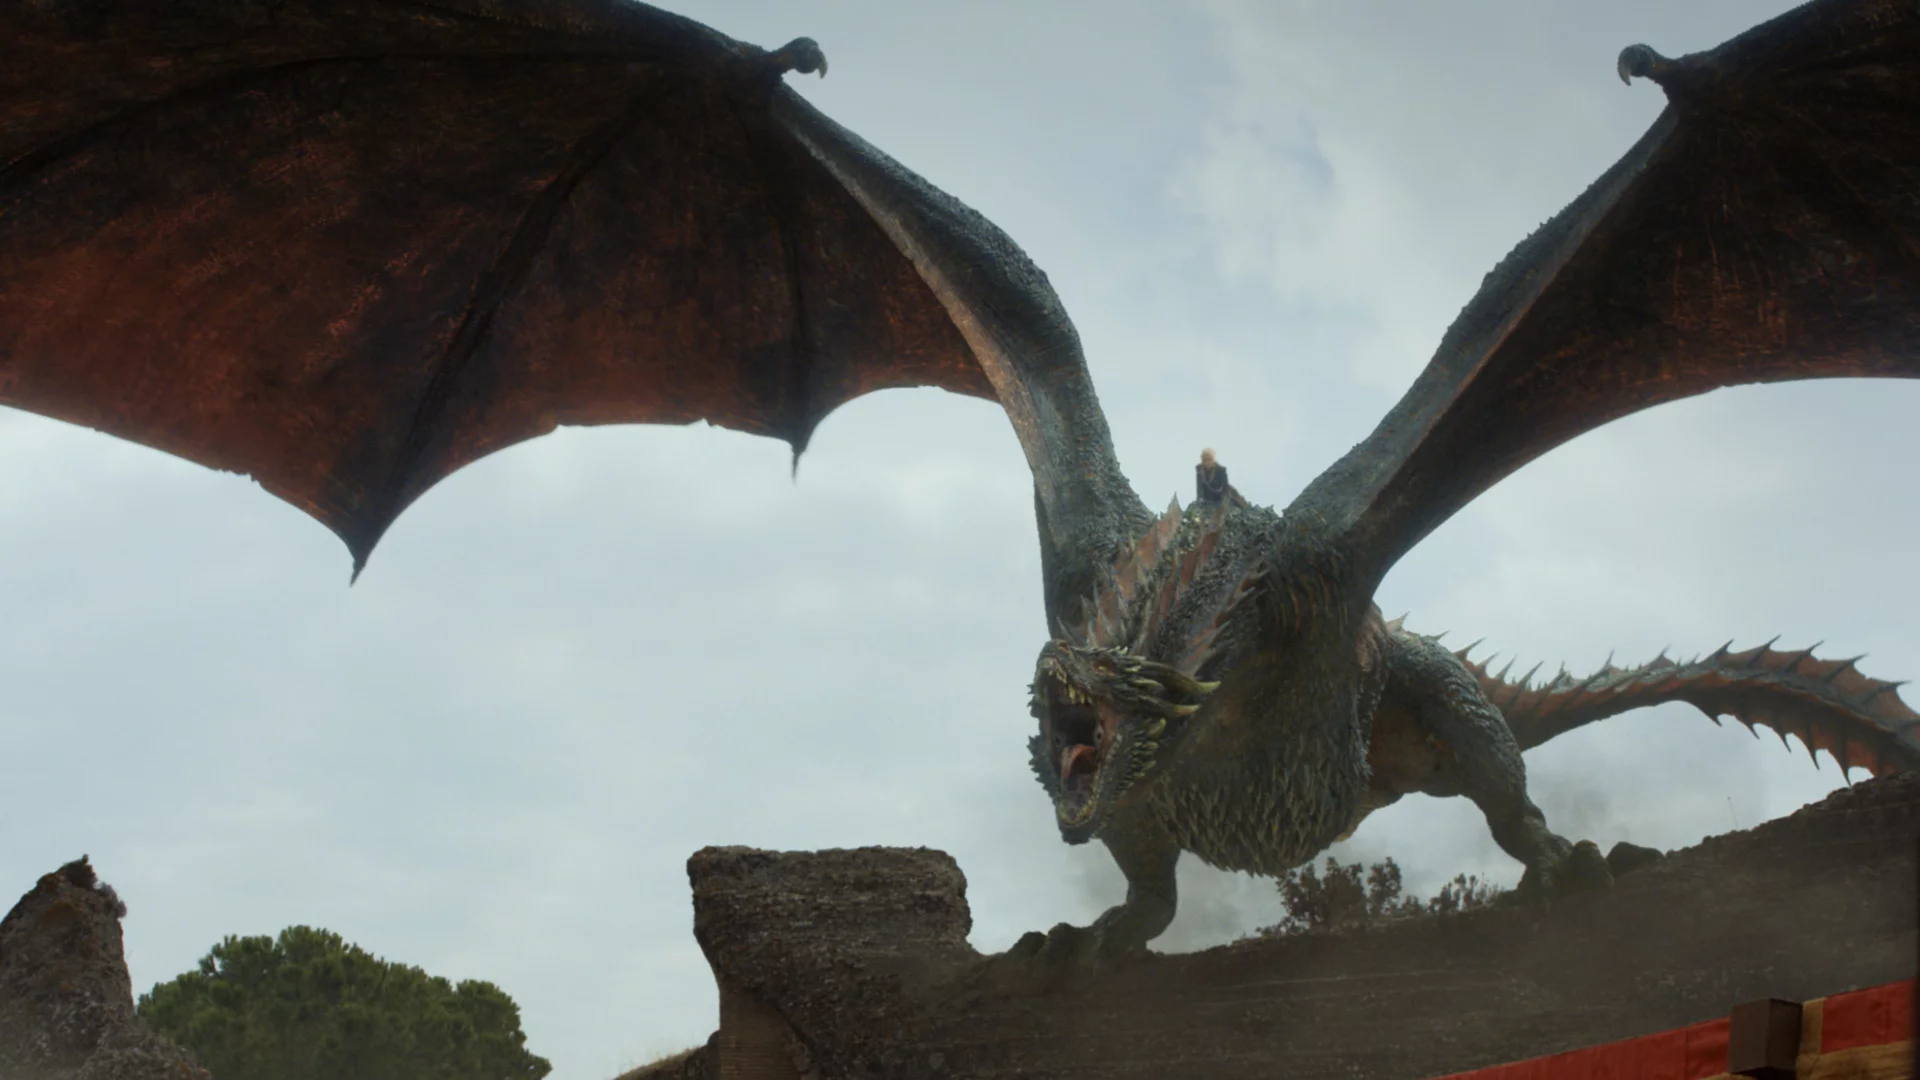 Viserys Targaryen riding a dragon in House of the Dragon.